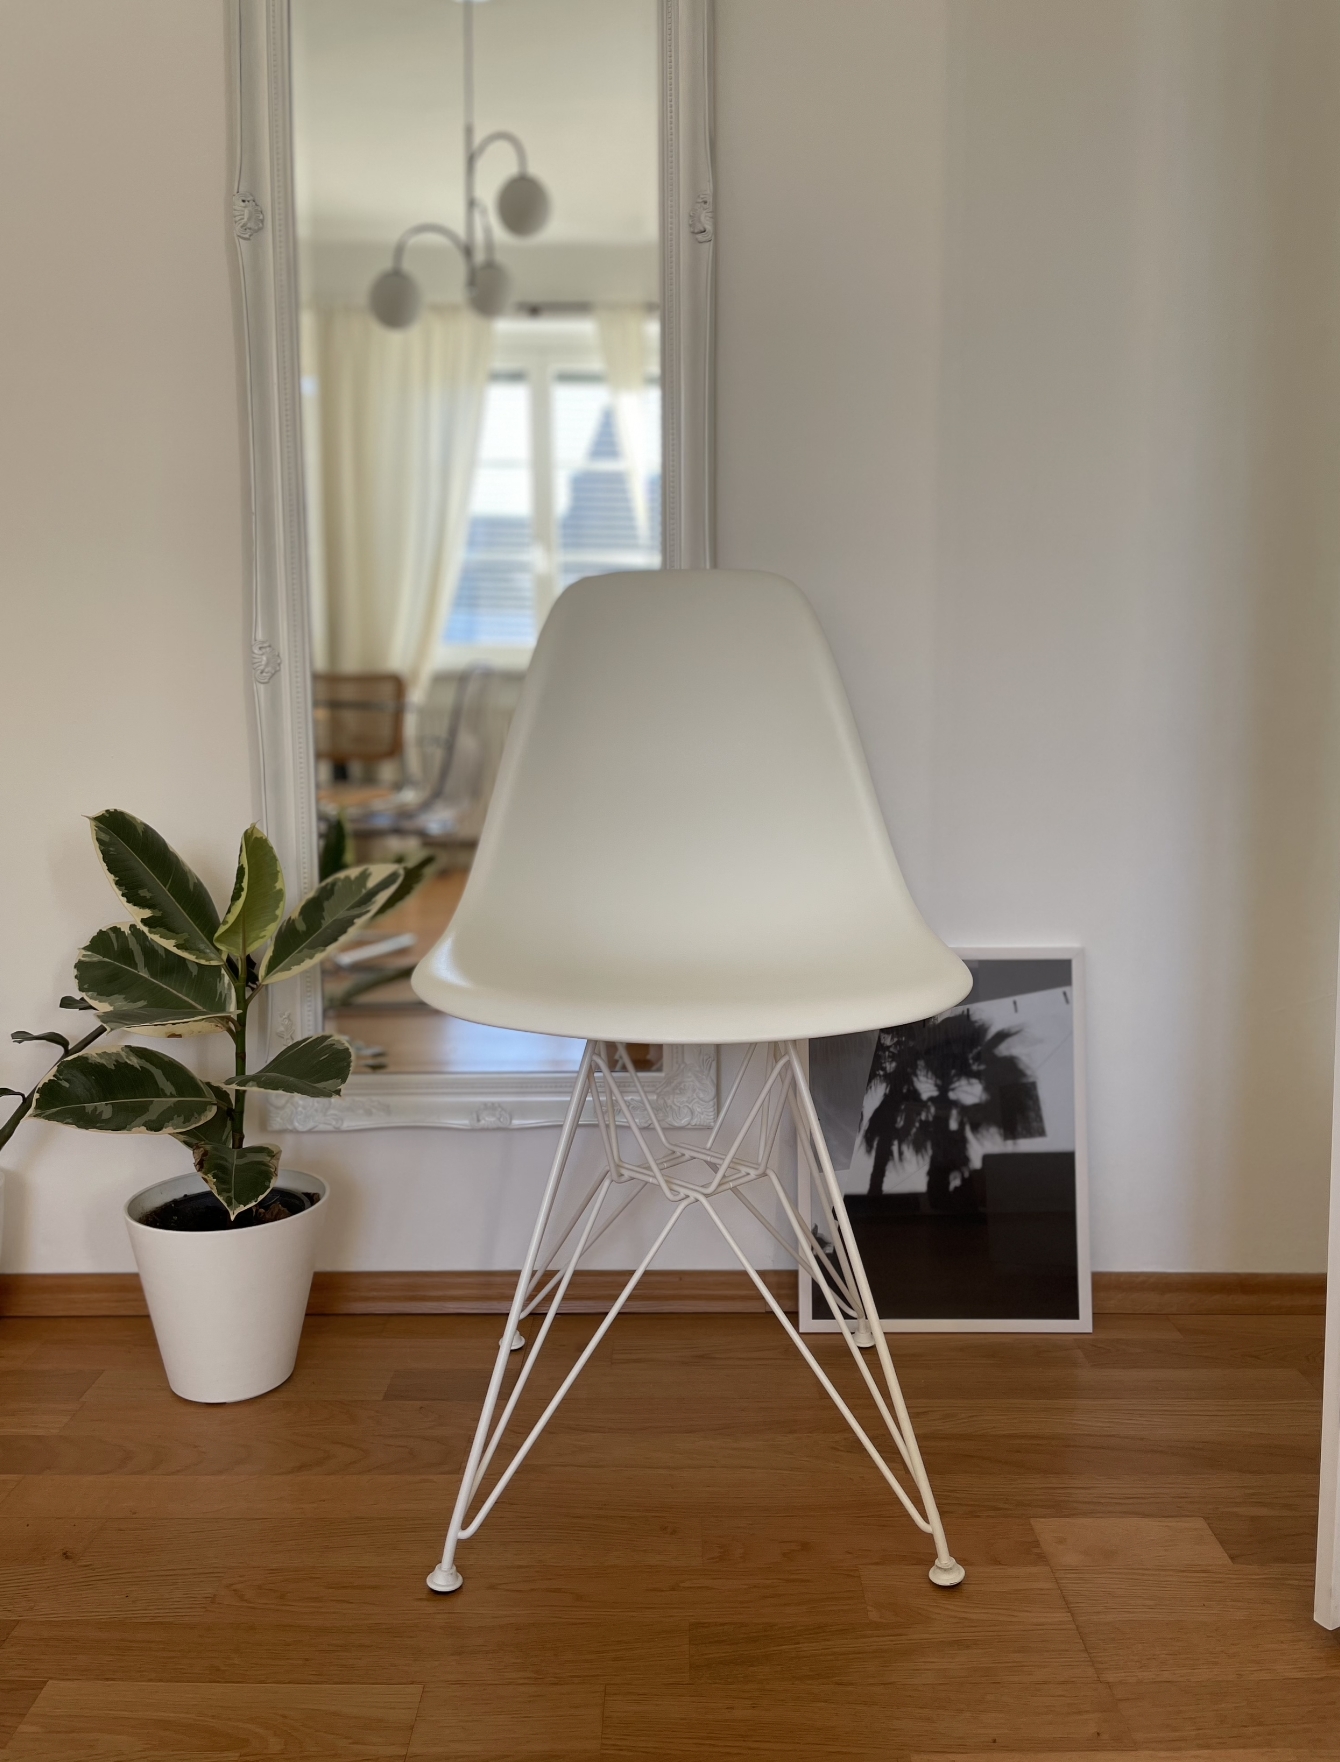 eames chair 🪑
#eames #chair #white #interior 